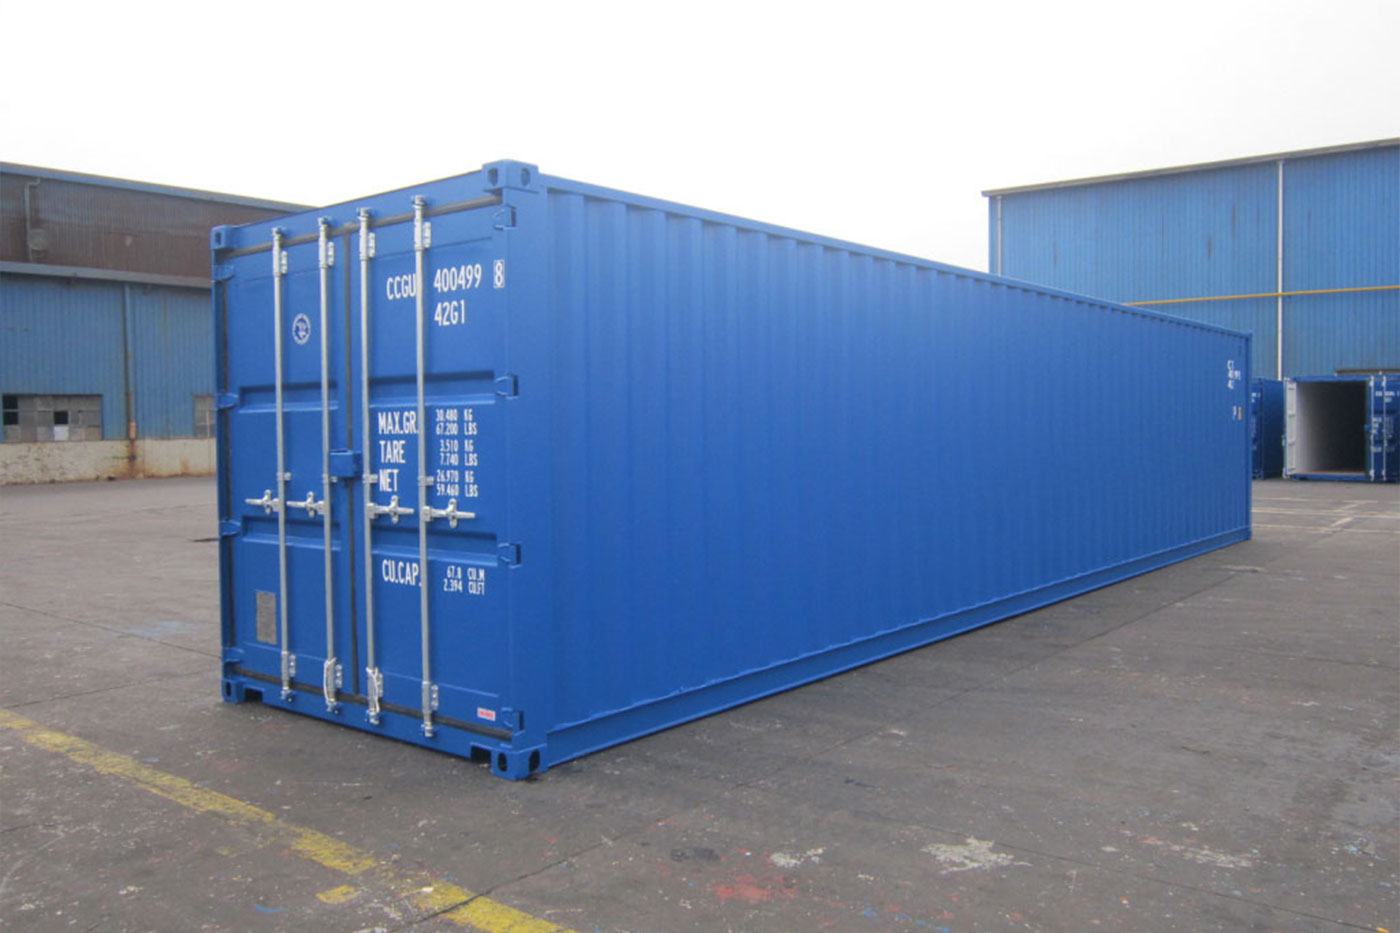 Giá bán container cũ biến động trên thị trường qua các giai đoạn - Ảnh 1